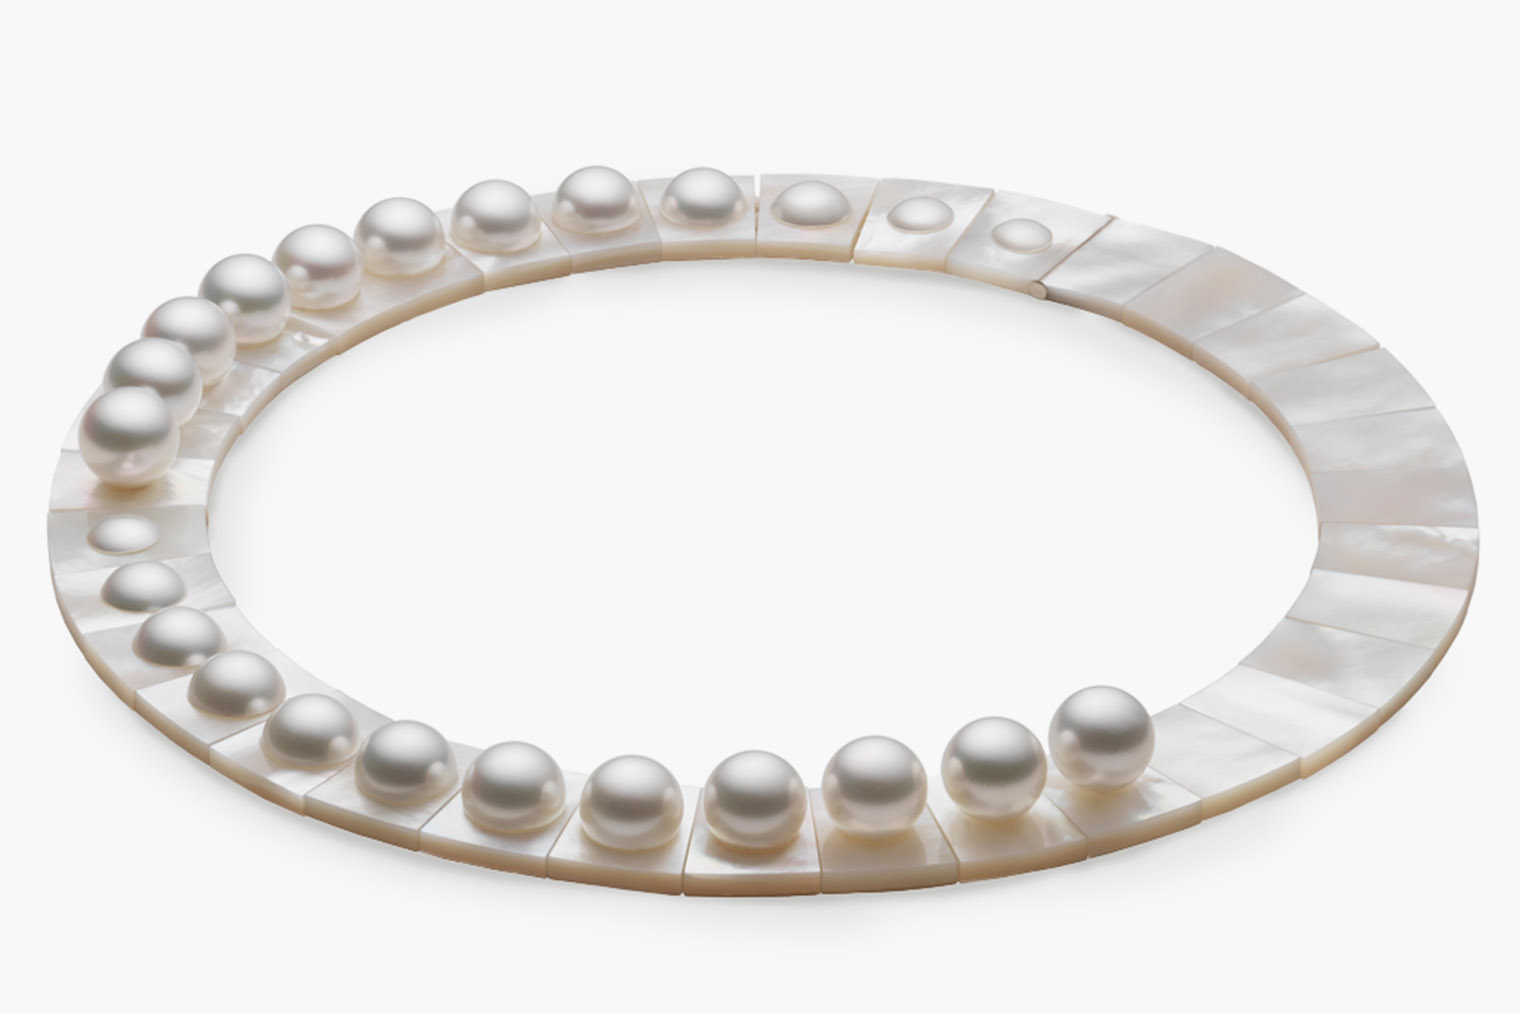 Nacre Necklace — работа Мелани Георгакопулос, одной из участниц выставки PEARL. То ли ожерелье, то ли миниатюрная скульптура. Жемчужины постепенно погружаются в перламутровое основание, как в воду. Источник: attagallery.com